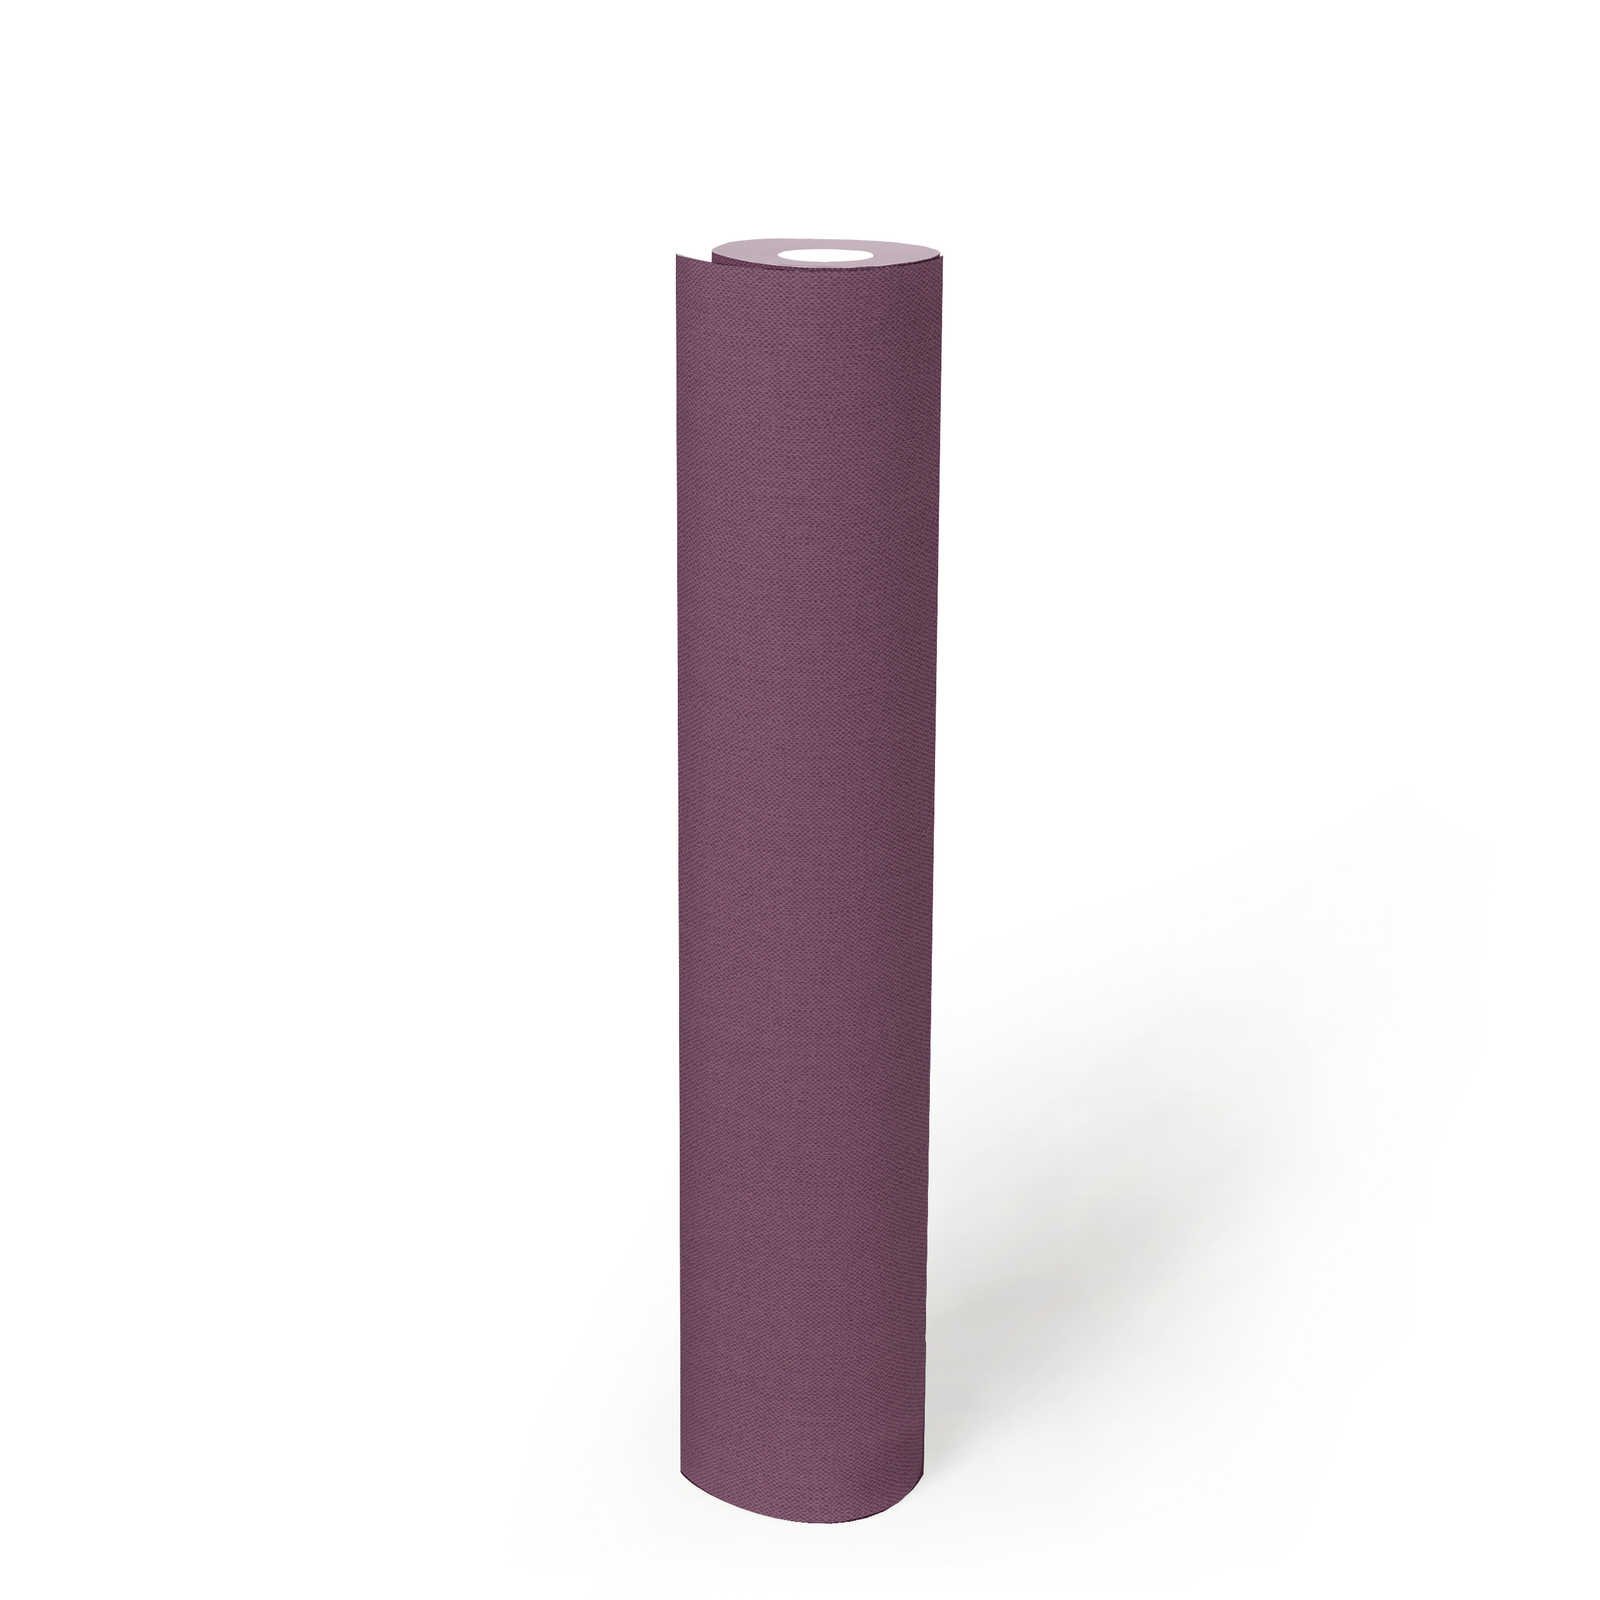             Violet papier peint uni, mat aspect textile & structure tissée
        